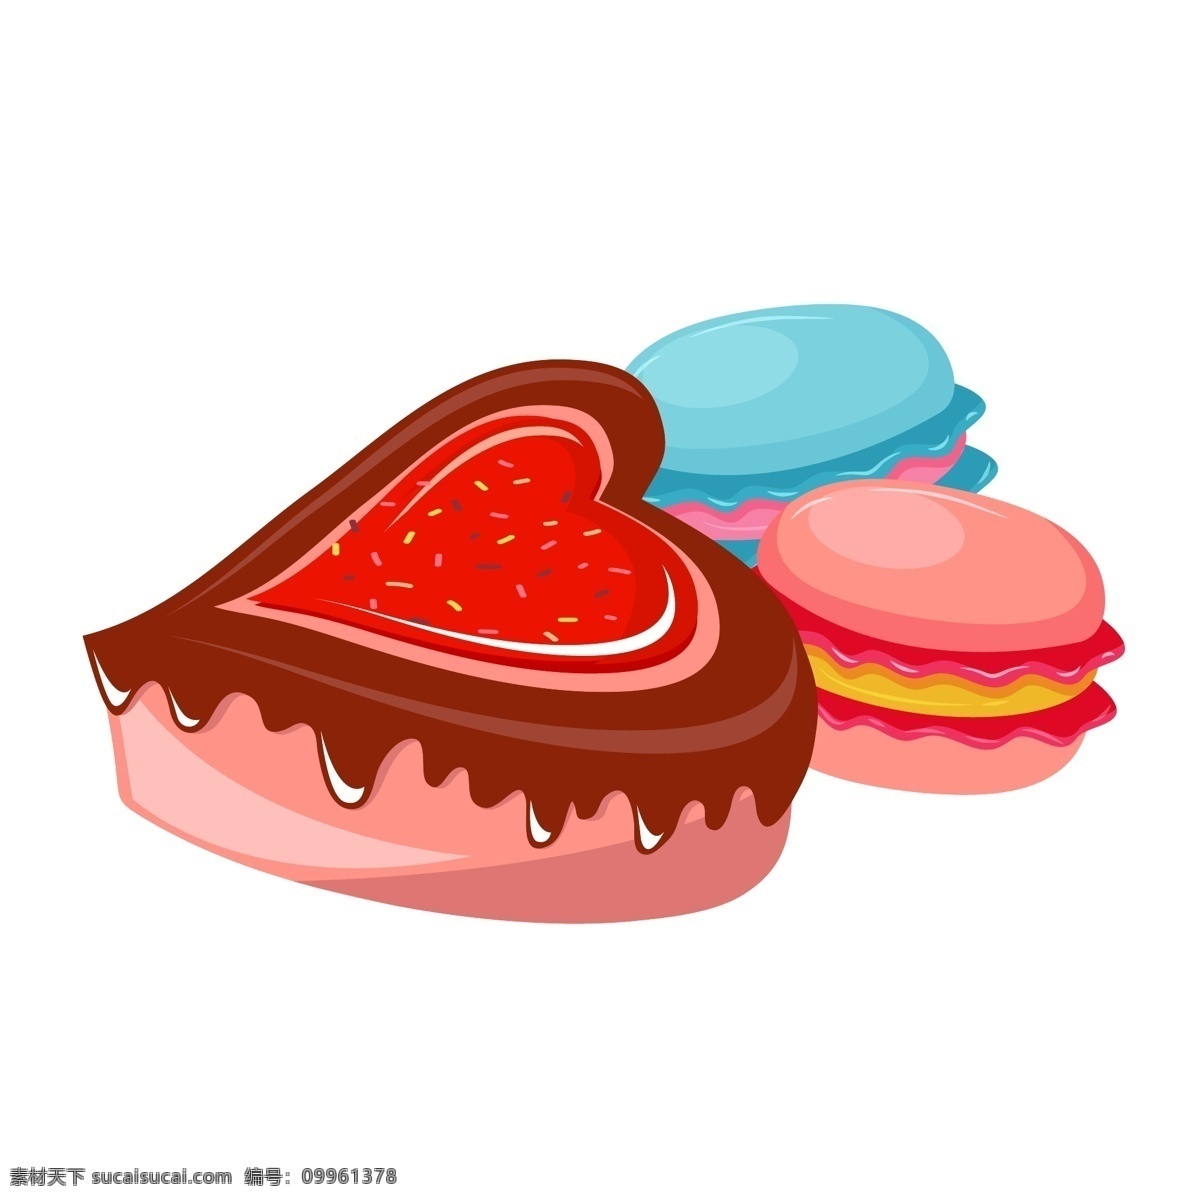 手绘 心形 甜点 插画 红色 汉堡 蓝色 手绘甜点 蛋糕 巧克力 巧克力甜点 甜点插图 粉色 心形甜点插画